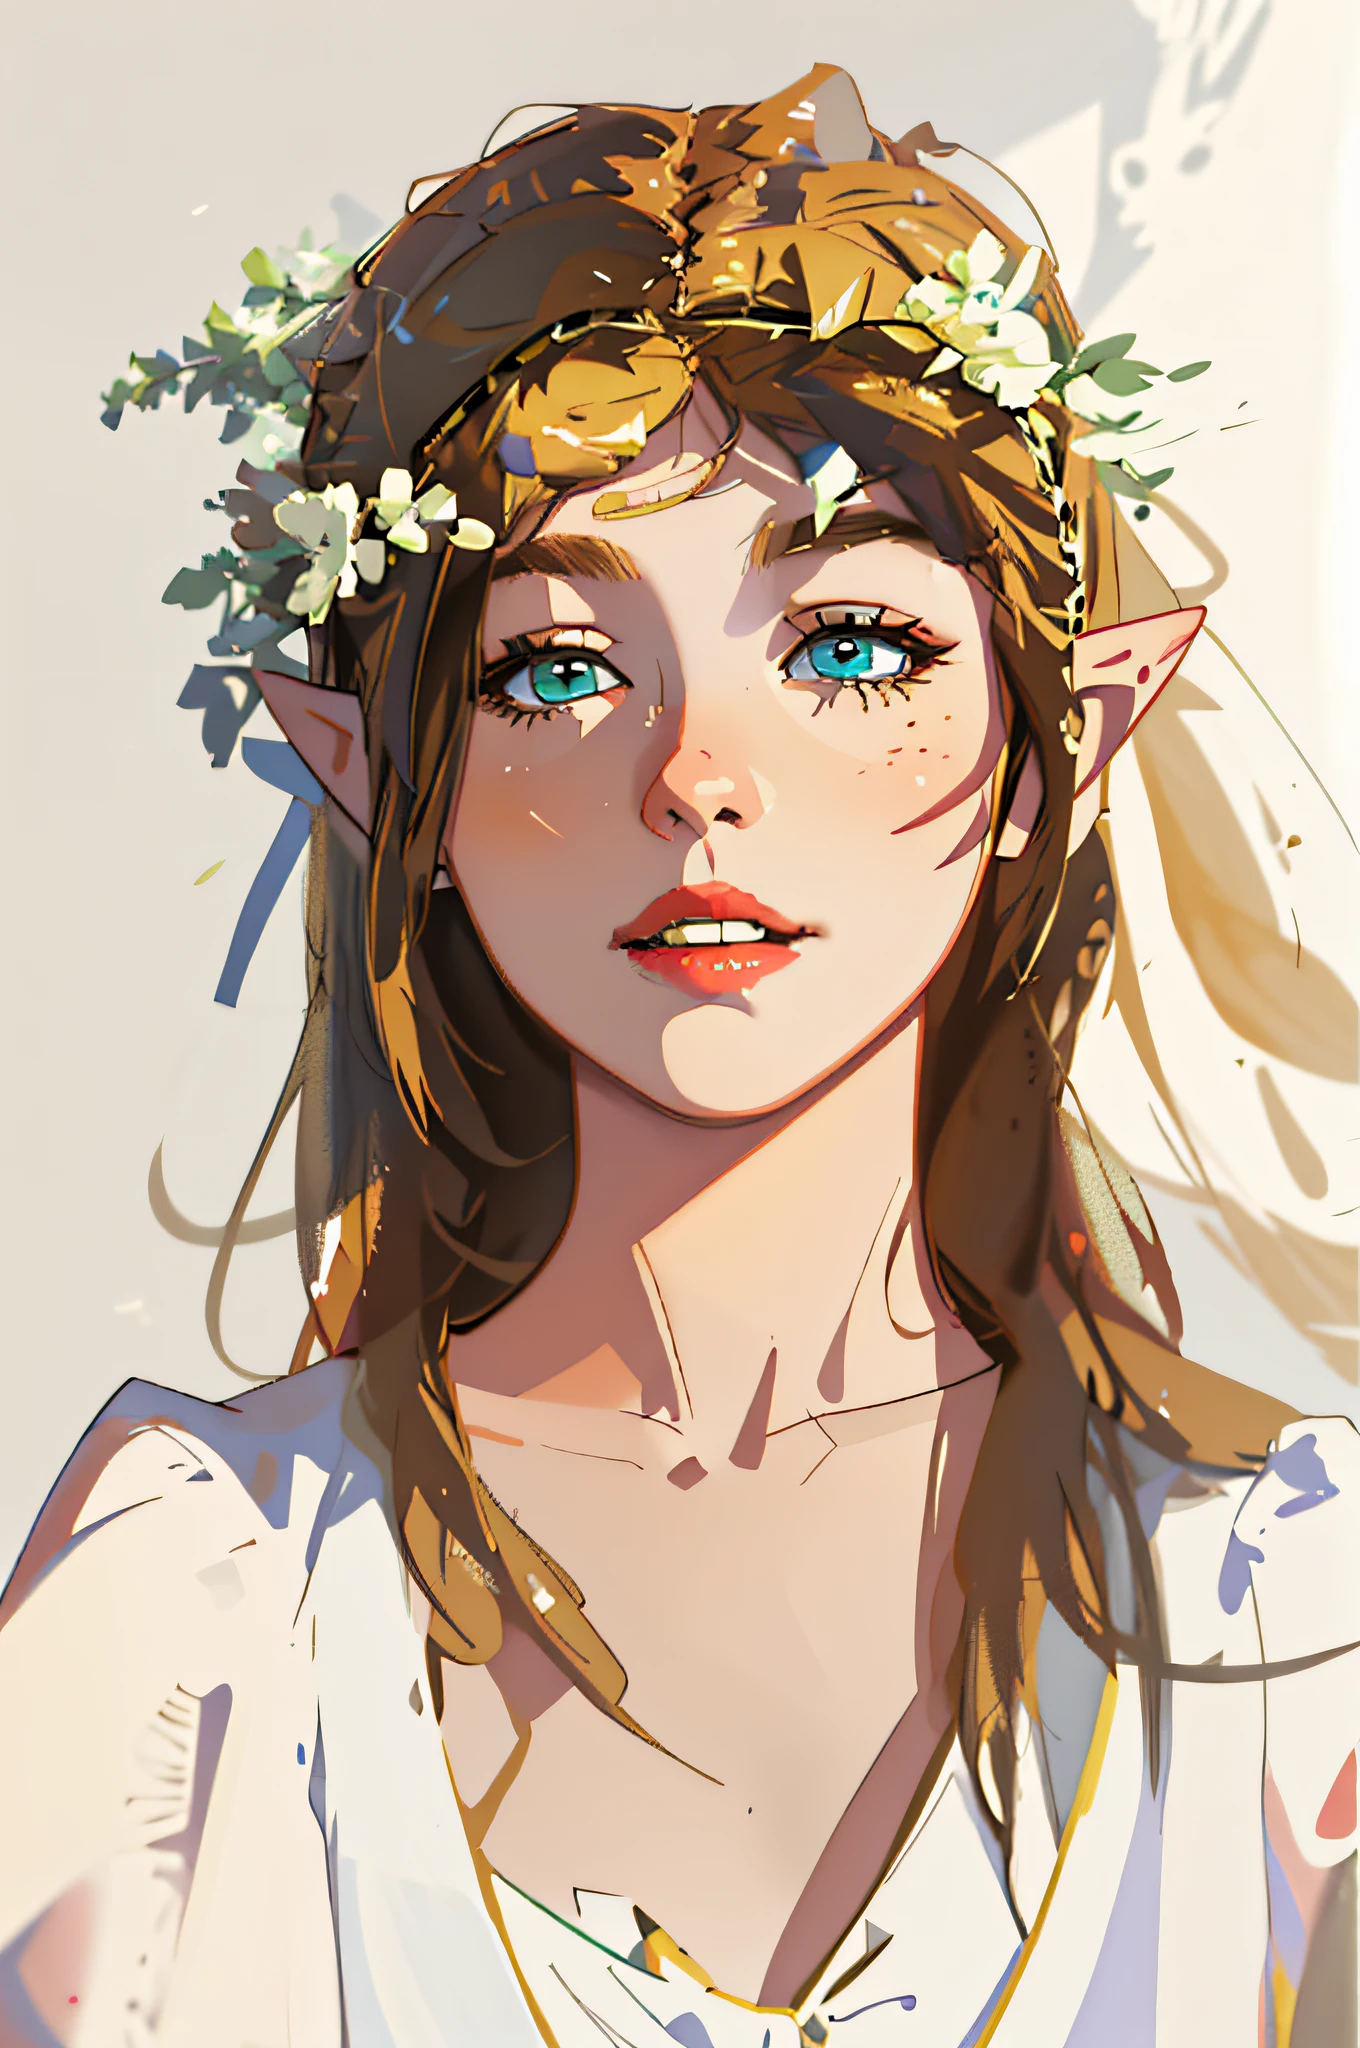 alta definição, (melhor detalhe) (melhor qualidade), há uma mulher com uma coroa de flores na cabeça, (Zelda), ((loiro)))